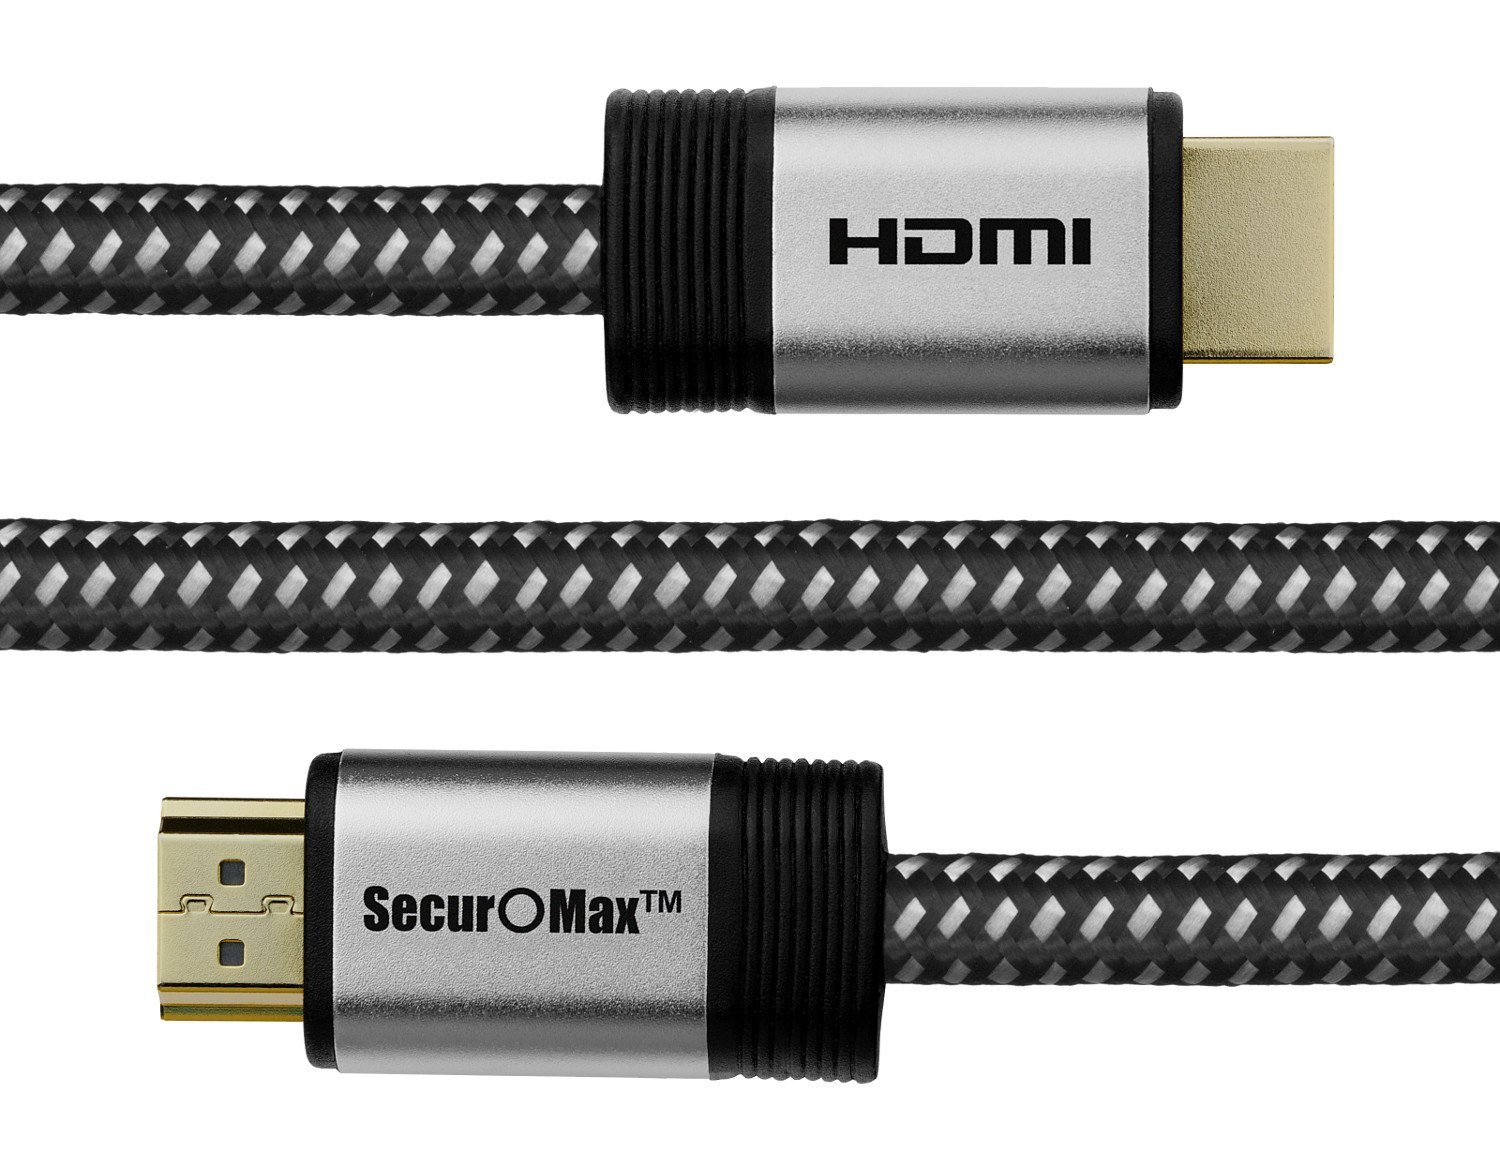 Cable HDMI 15 FT - Cable trenzado - 4K HDMI 2.0 listo - Alta velocidad - Conectores chapados en oro - Ethernet / canal de retorno de audio - Video 4K UHD 2160p, HD 1080p, 3D - Xbox PlayStation PS3 PS4 PC Apple TV